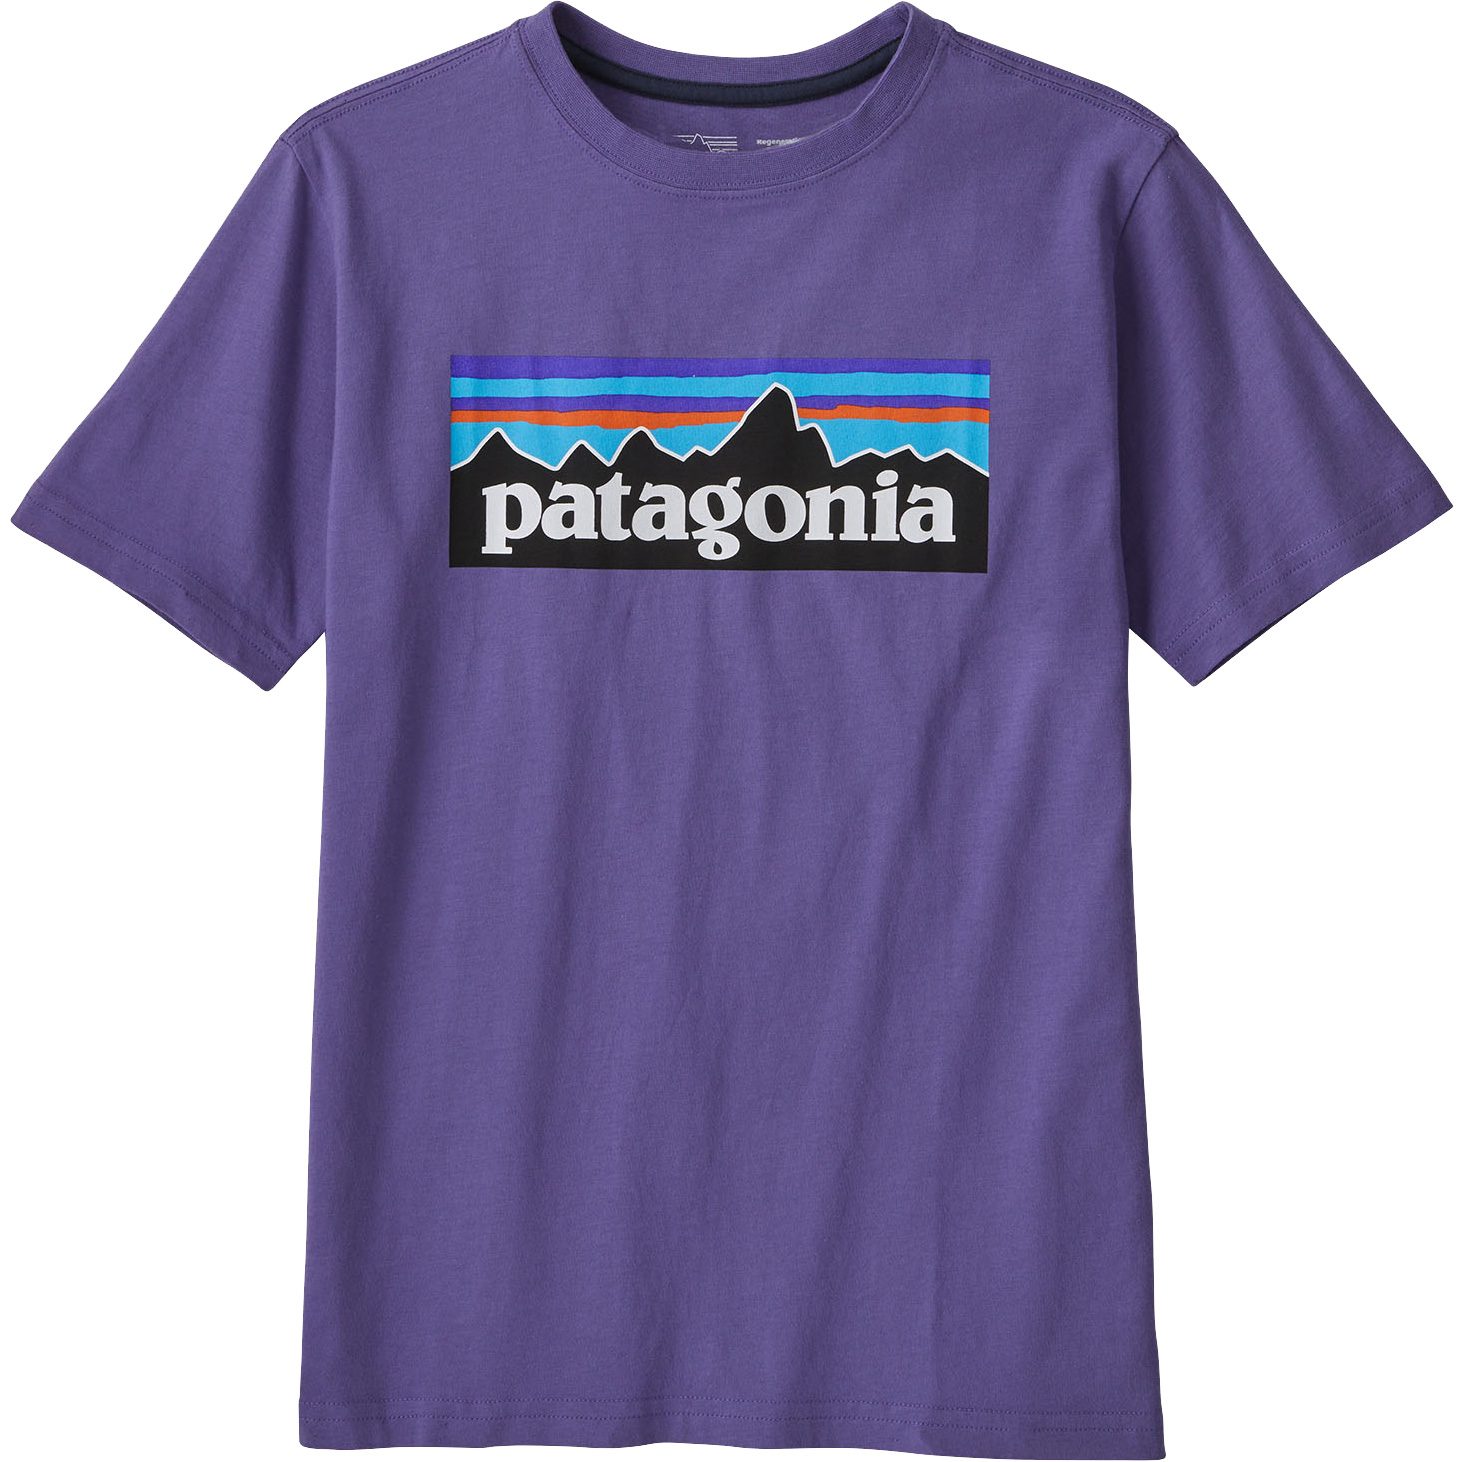 Patagonia - Regenerative Organic Certified T-Shirt Kids pepl at